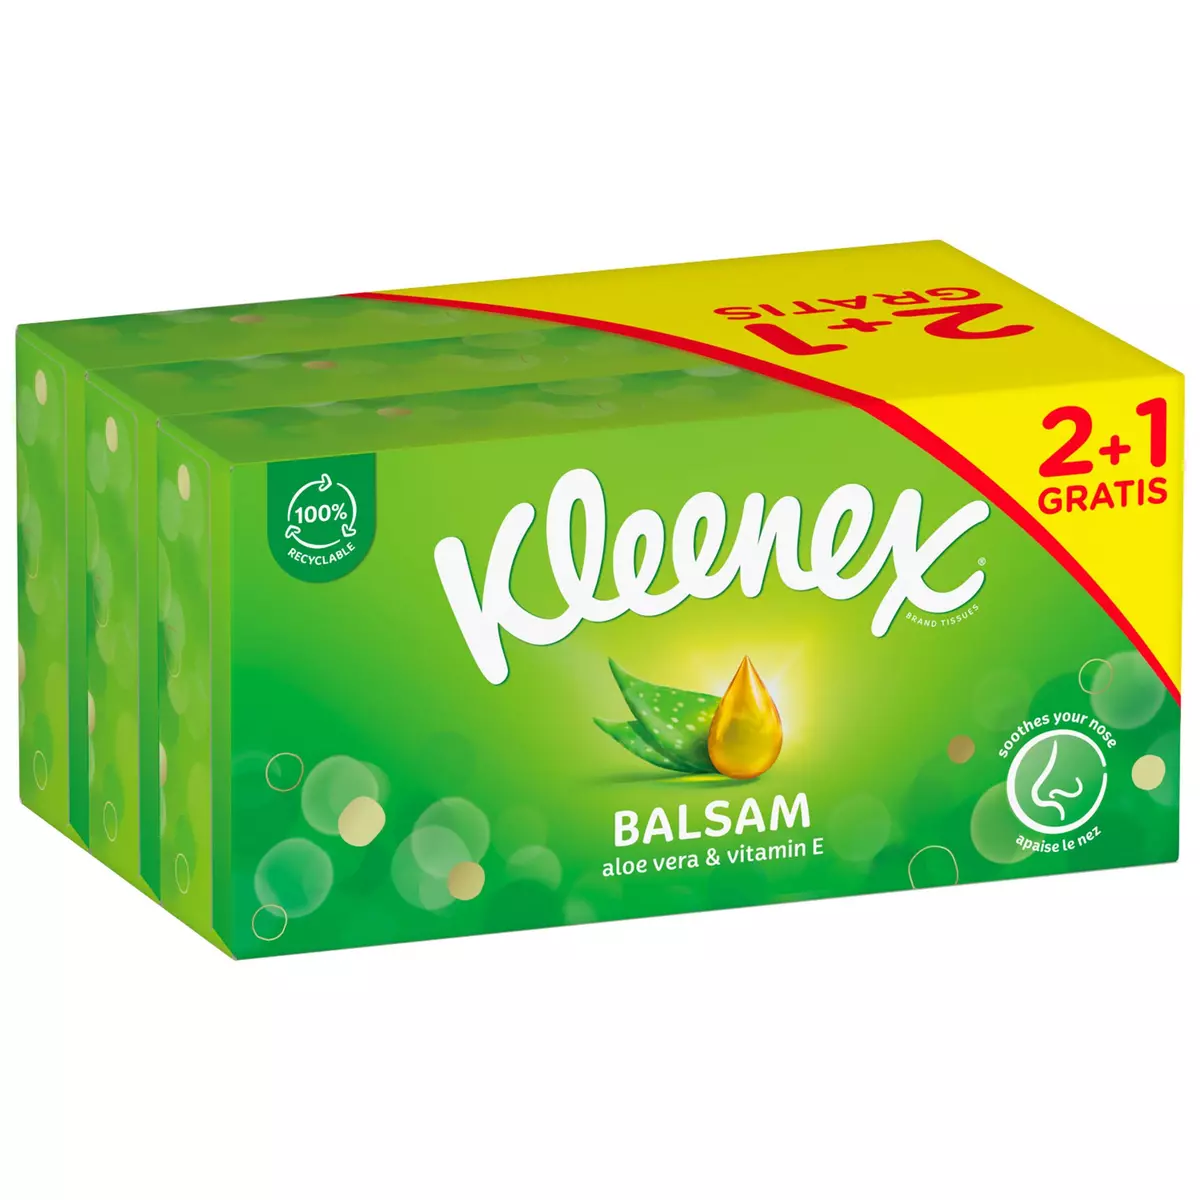 KLEENEX Boîte de mouchoirs balsam 3x64 mouchoirs 2 boîtes + 1 offerte